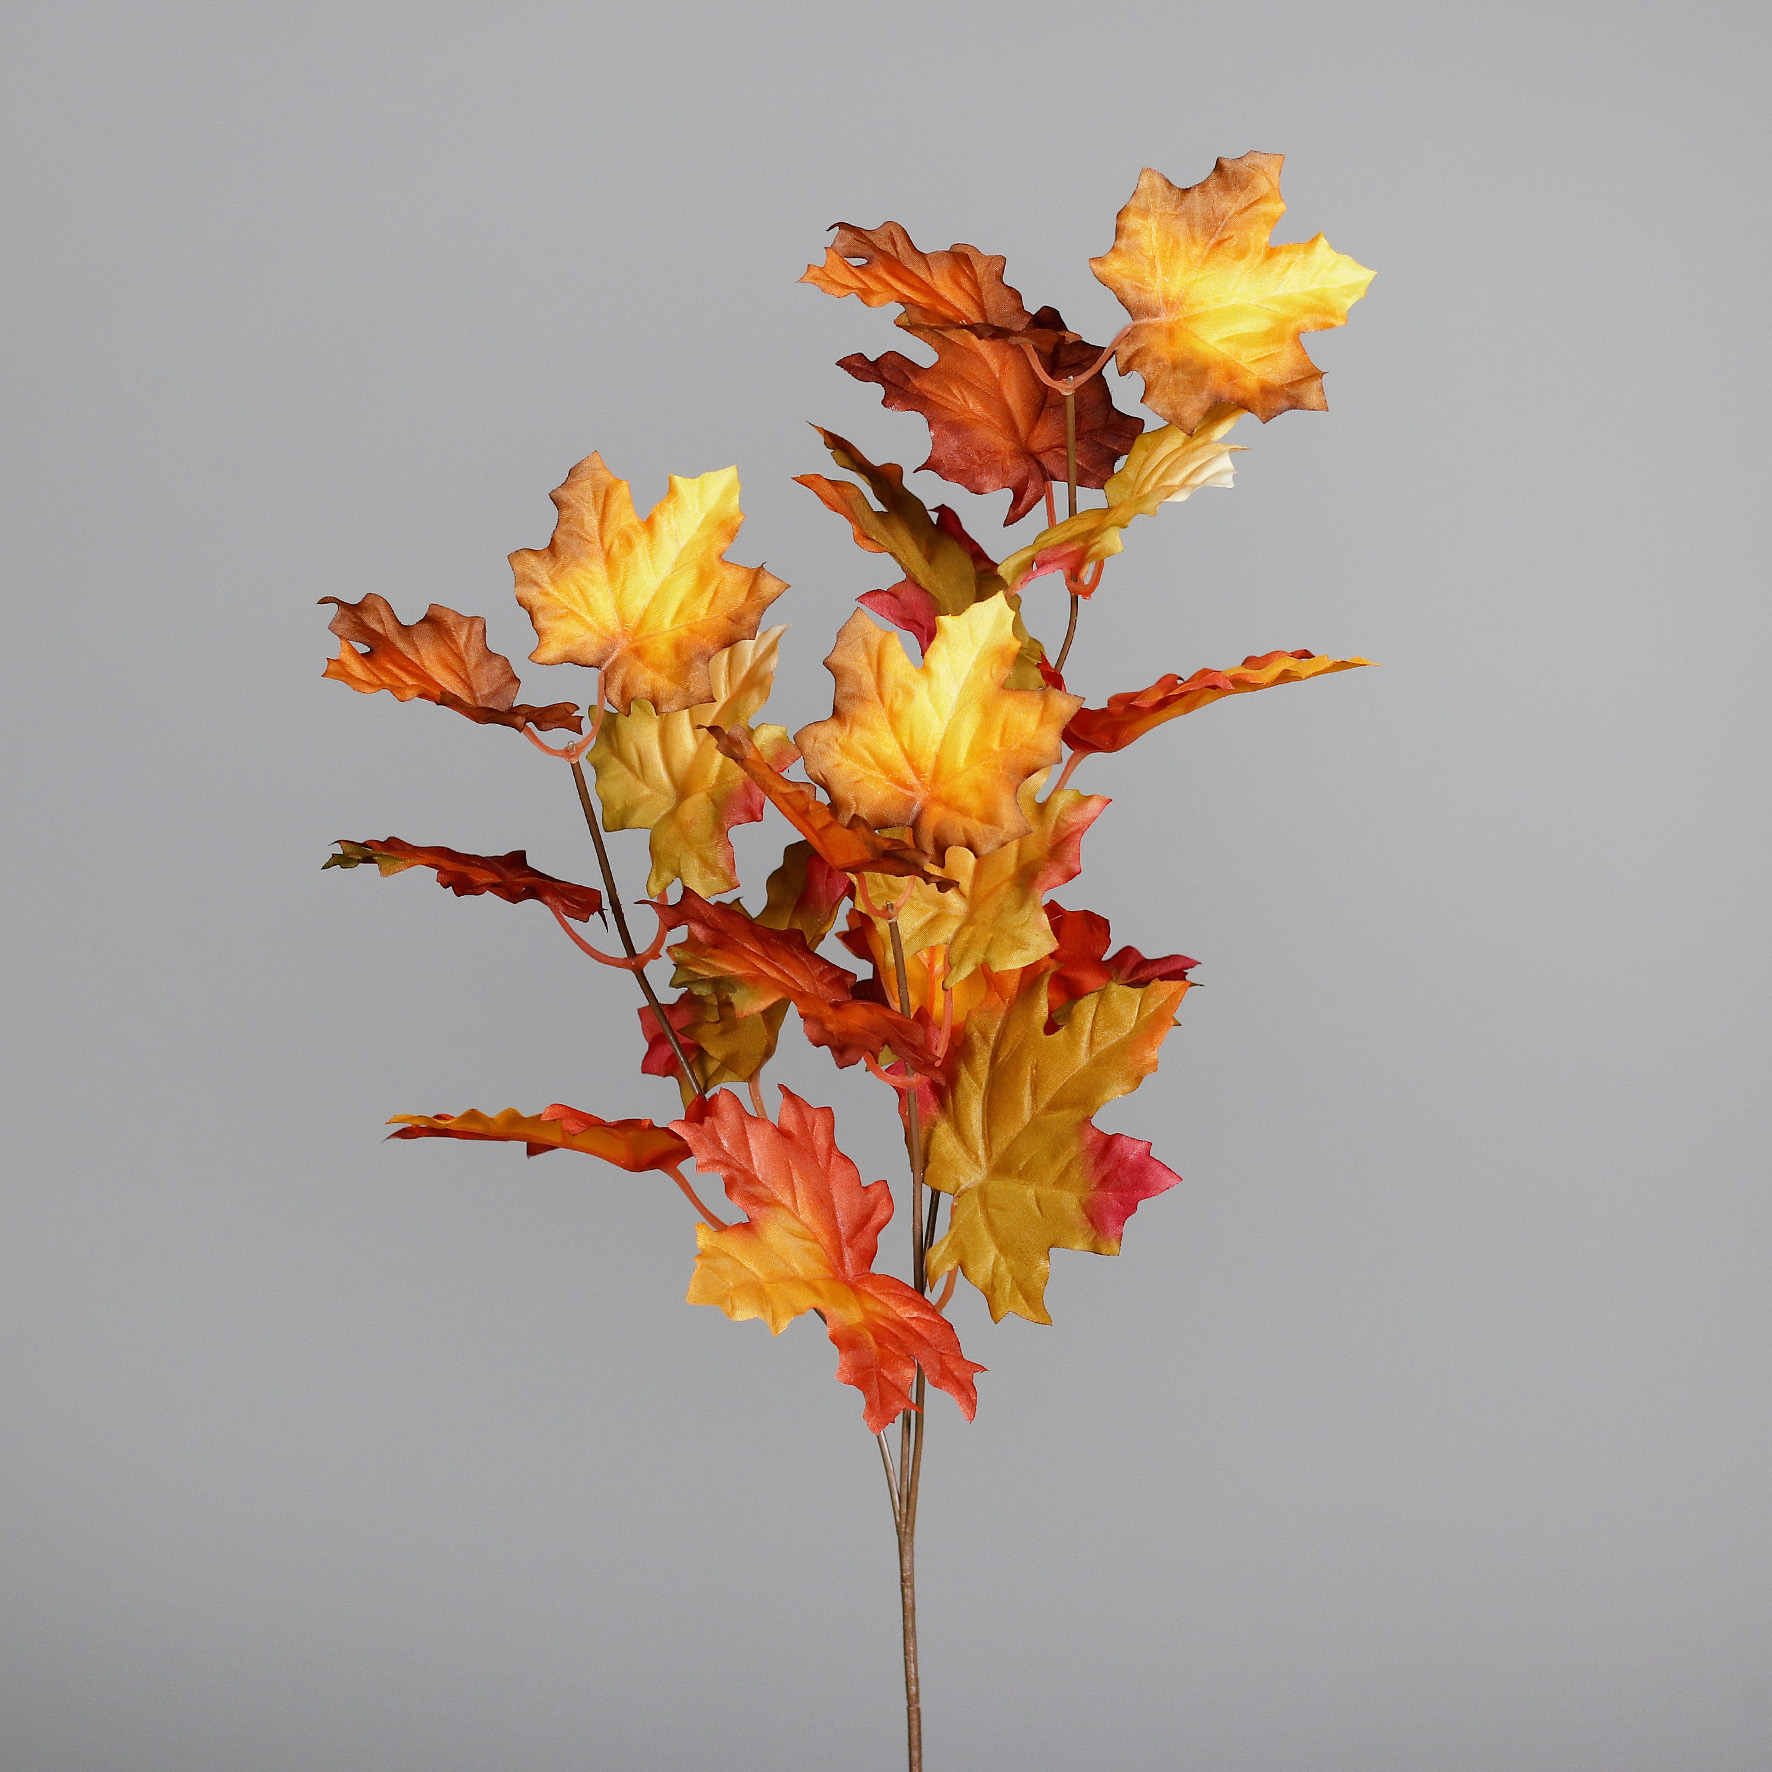 Ahornzweig 75cm grün-gelb-orange-rot DP Kunstpflanzen künstlicher Ahorn Herbstzweig